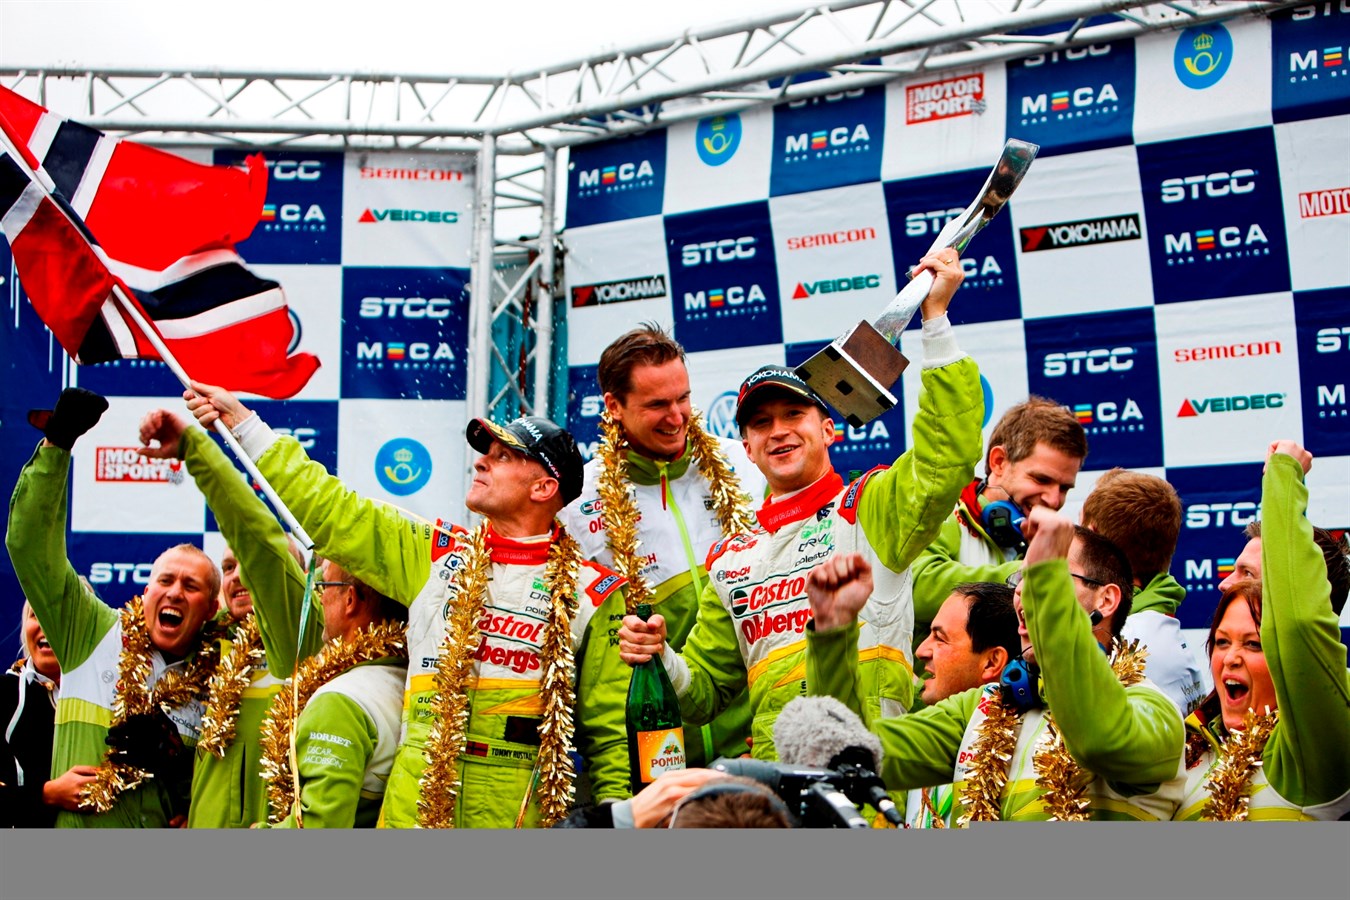 Mästare! – Tommy Rustad, Volvo och Polestar vann STCC